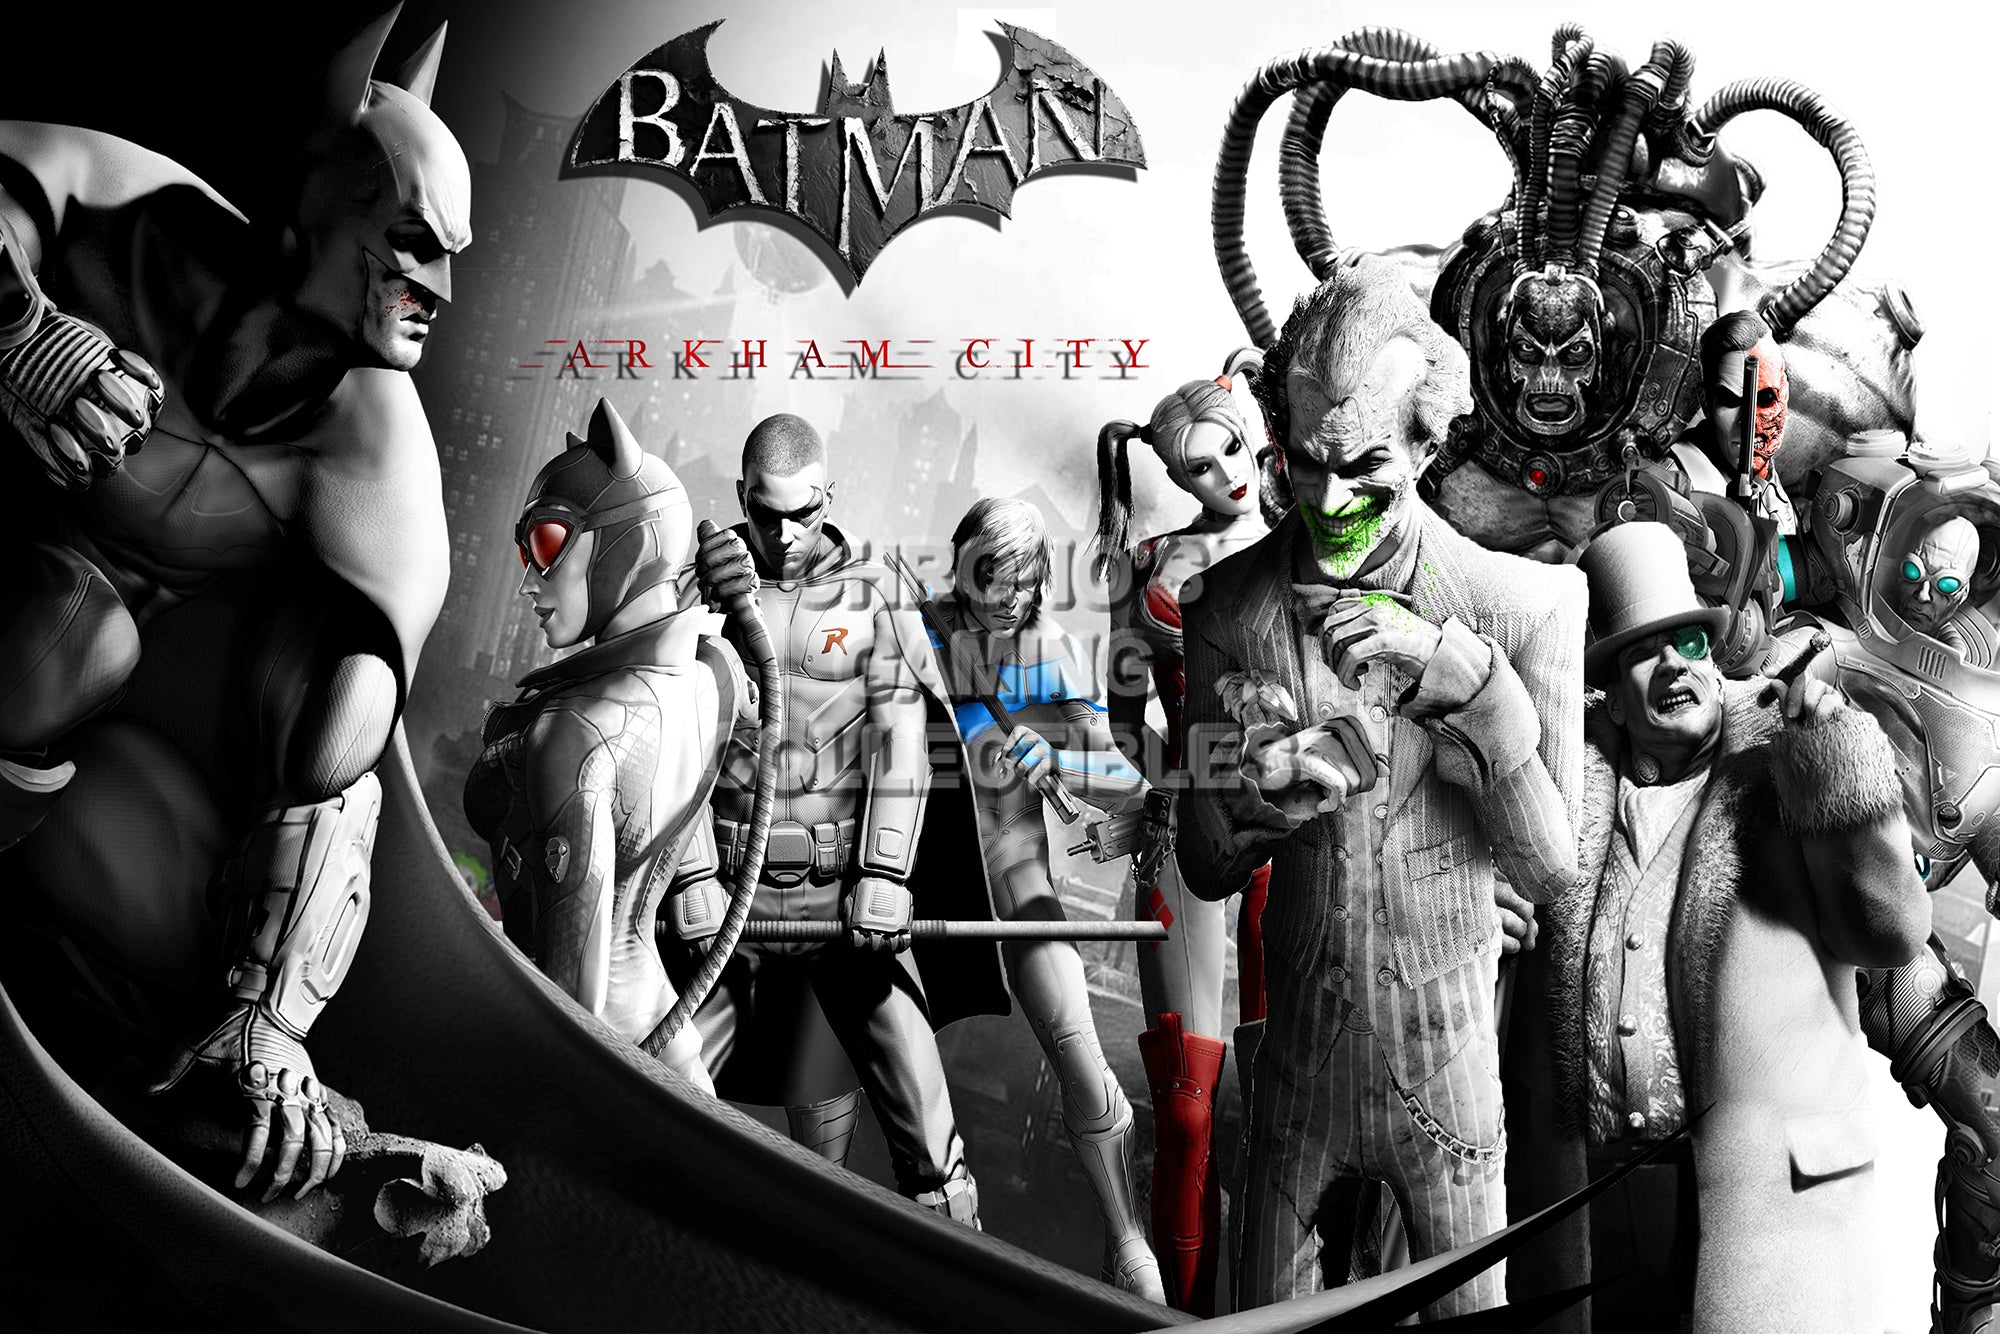 batman arkham city xbox 360